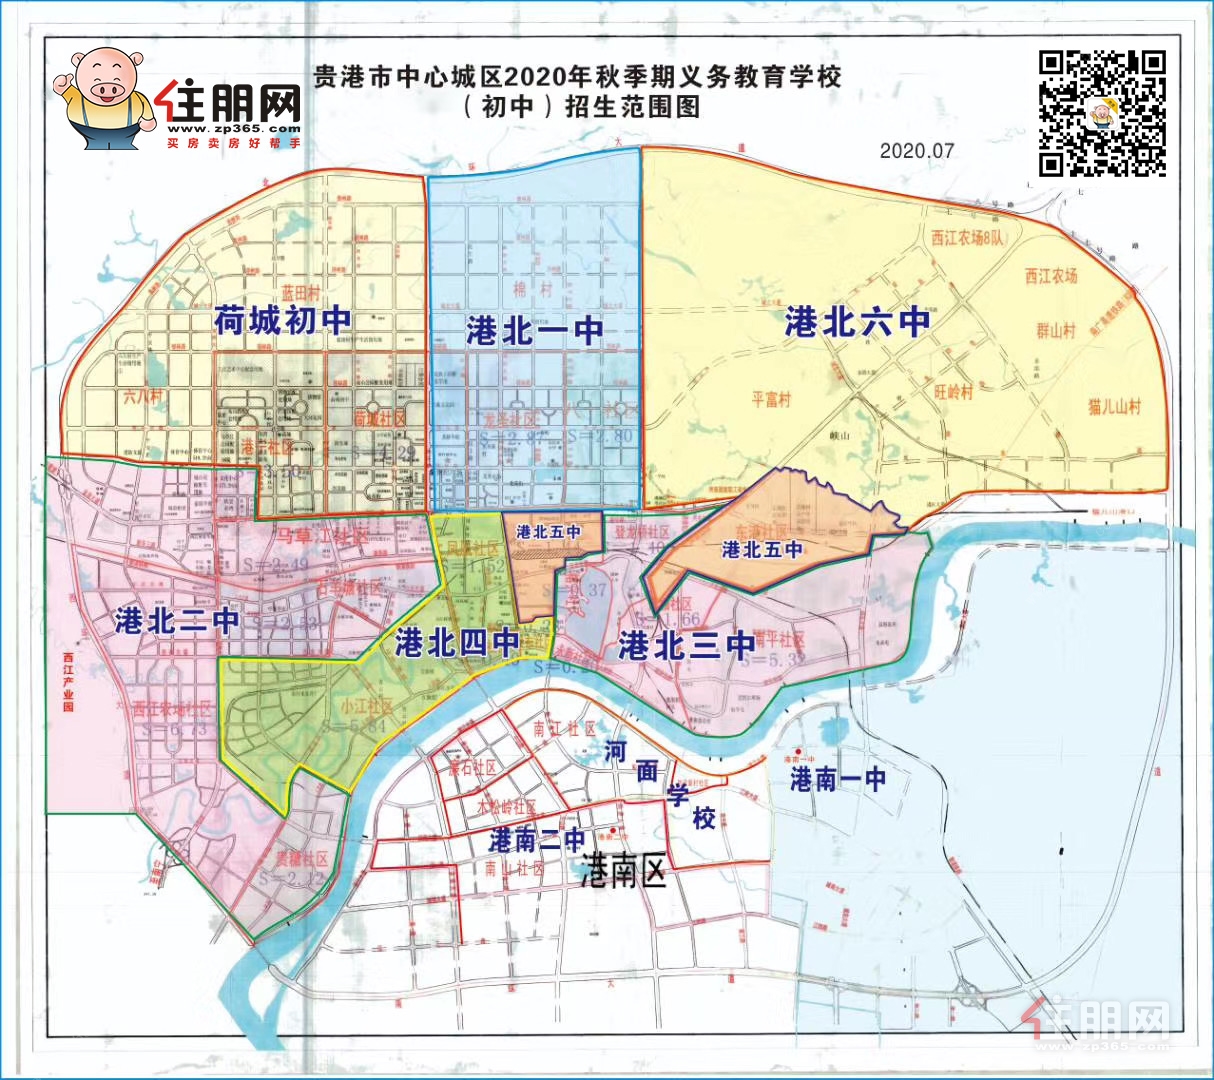 贵港市标准地图（公路版）_贵港地图库_地图窝